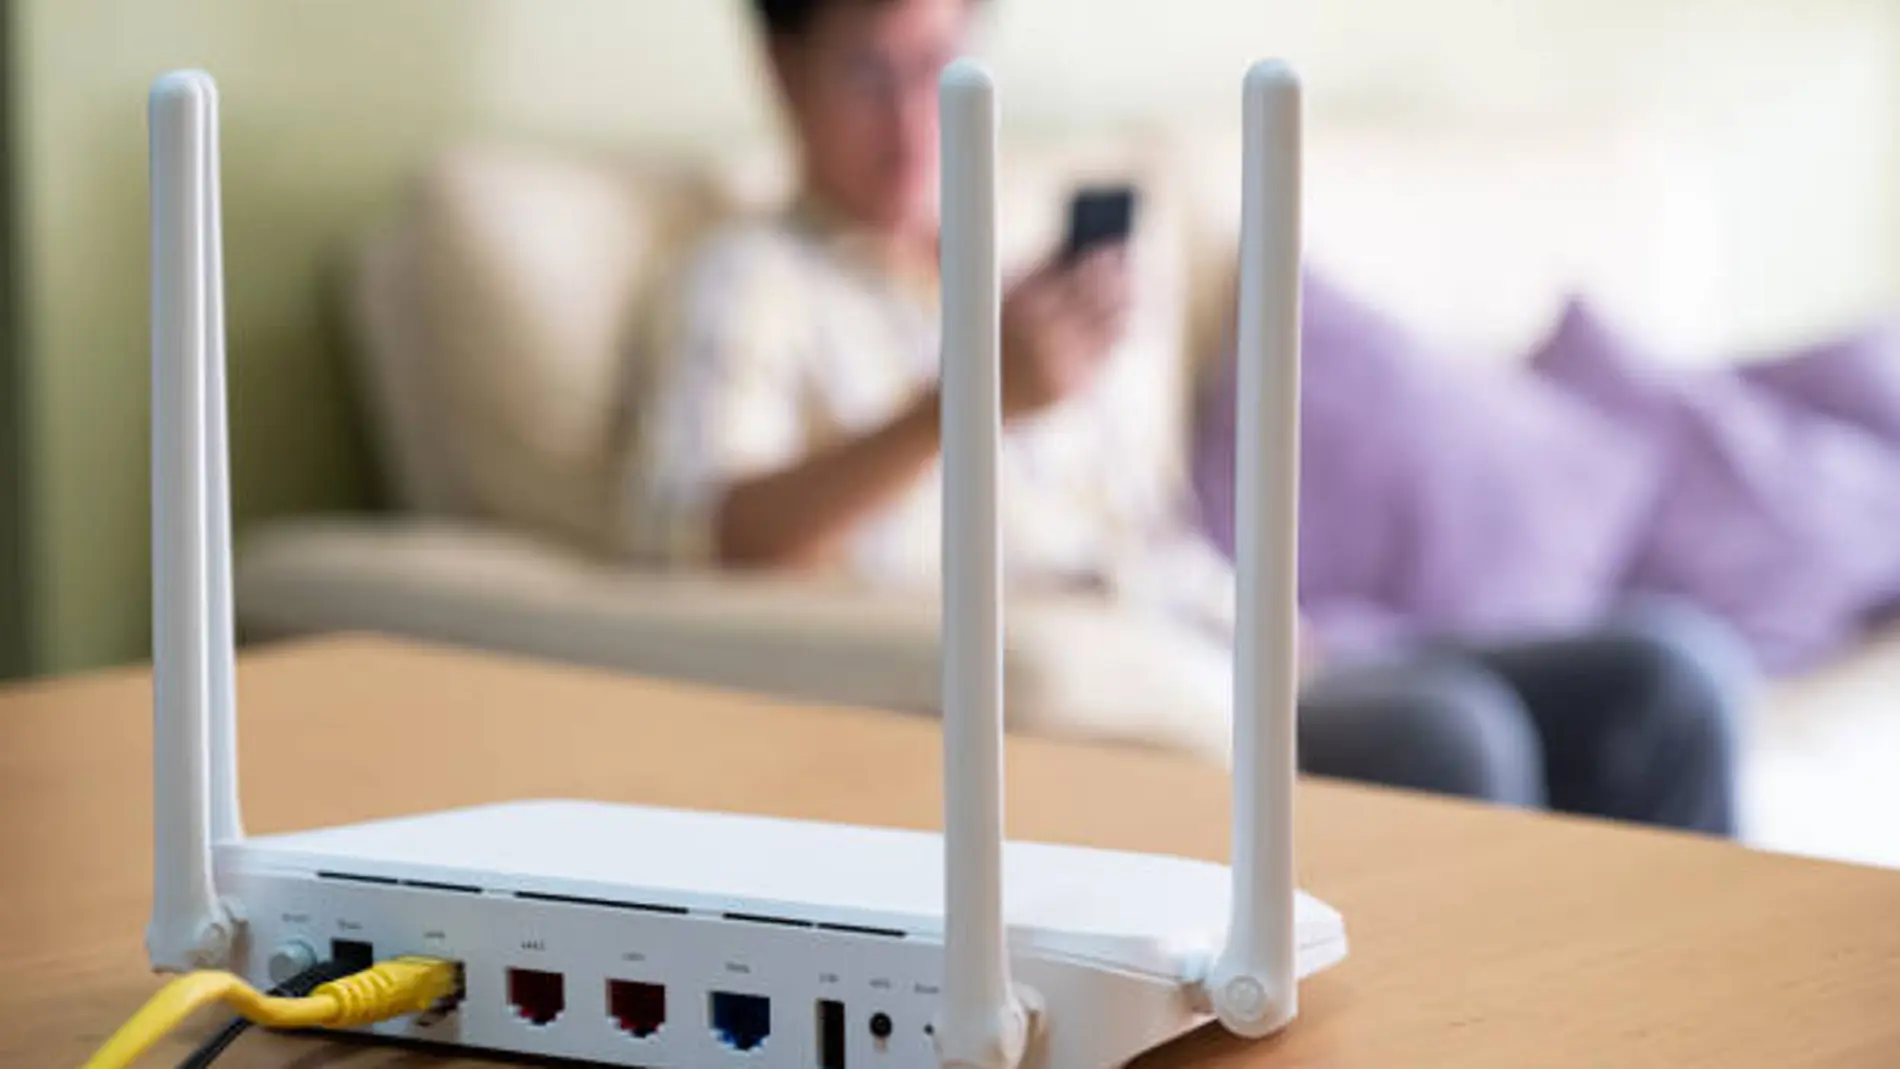 Cómo amplificar el WiFi de casa paso a paso